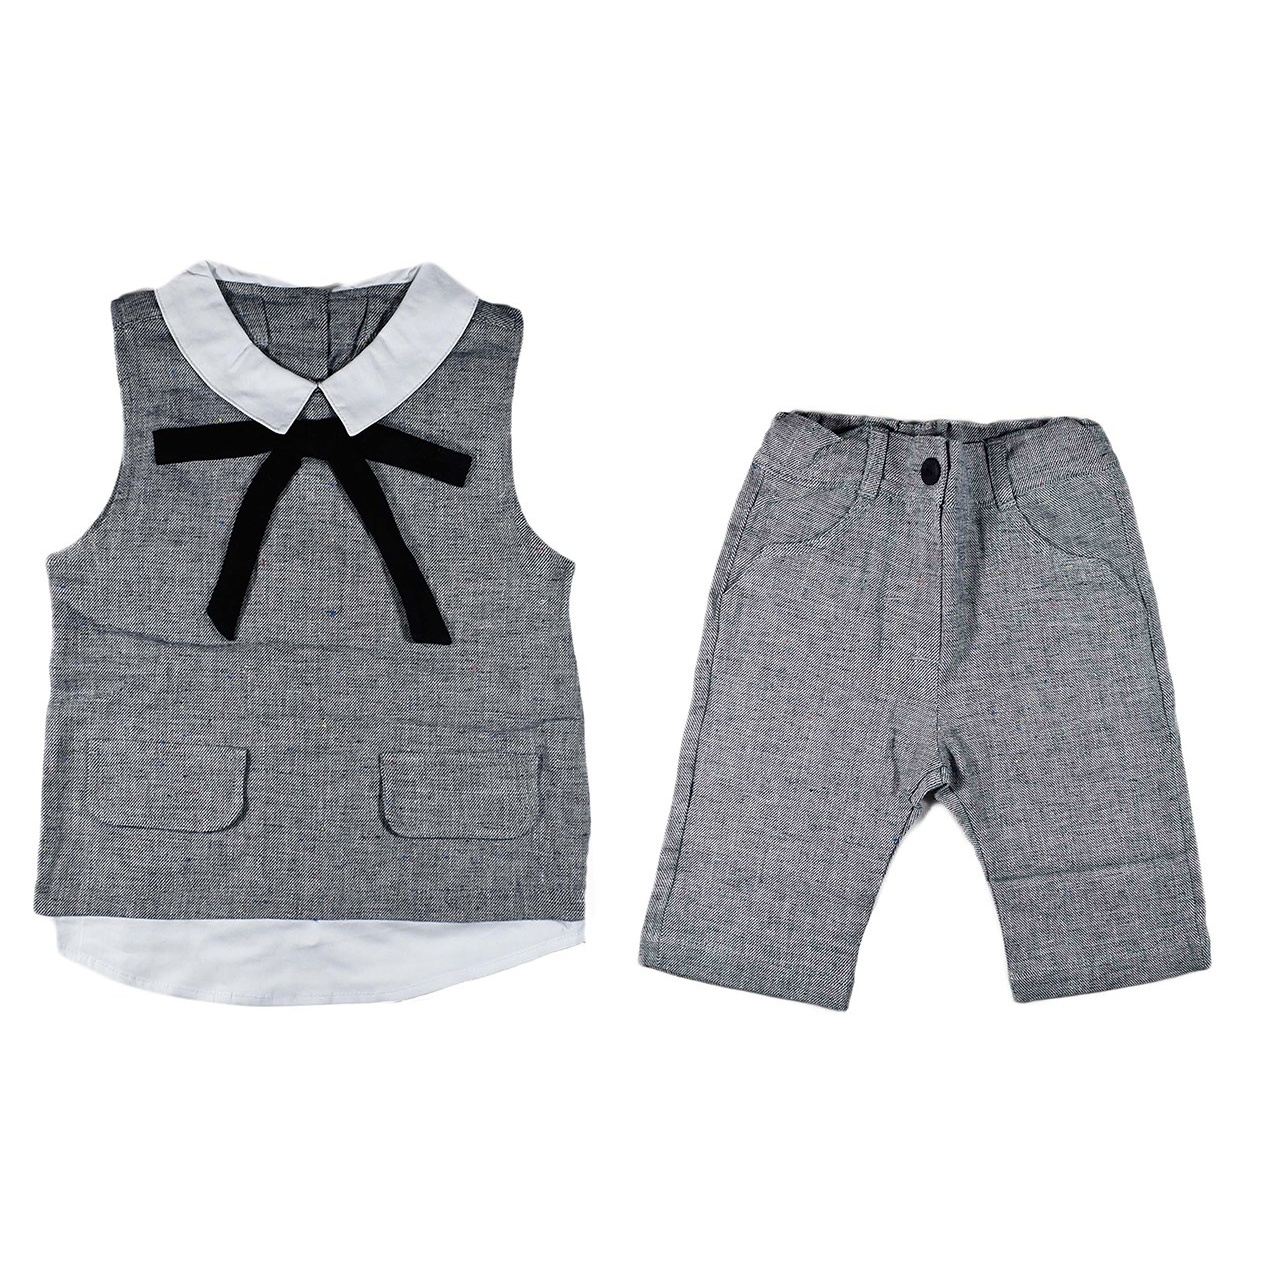 ست لباس کودک سوگلی مدلclassic grey کد433872